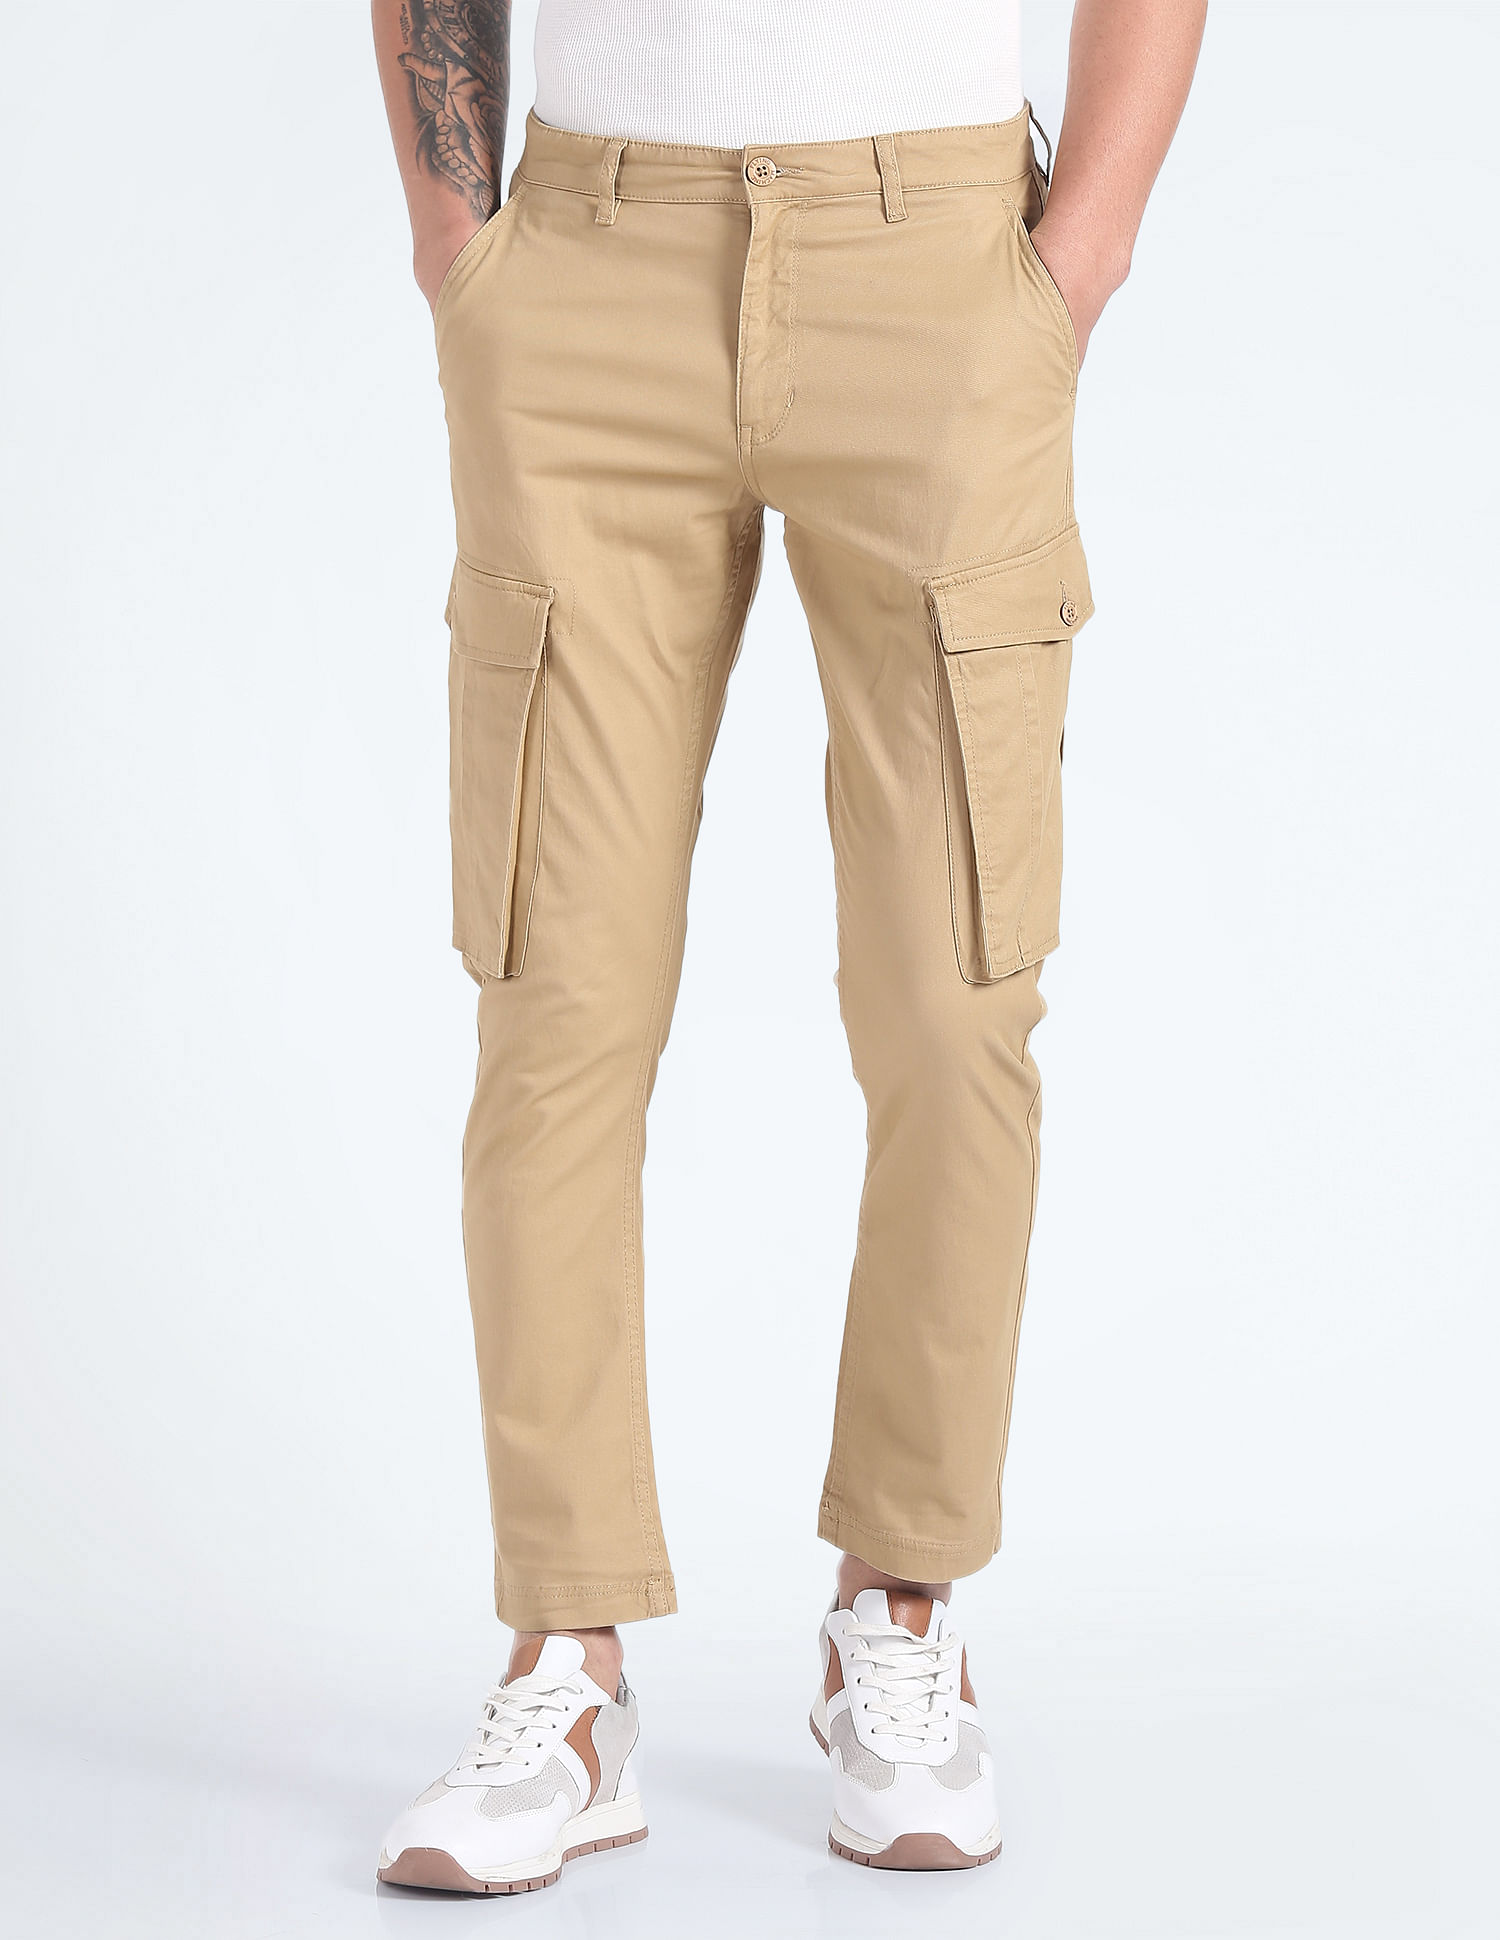 Medium Grey Solid Full Length Casual Men Slim Fit Jeans - Selling Fast at  Pantaloons.com